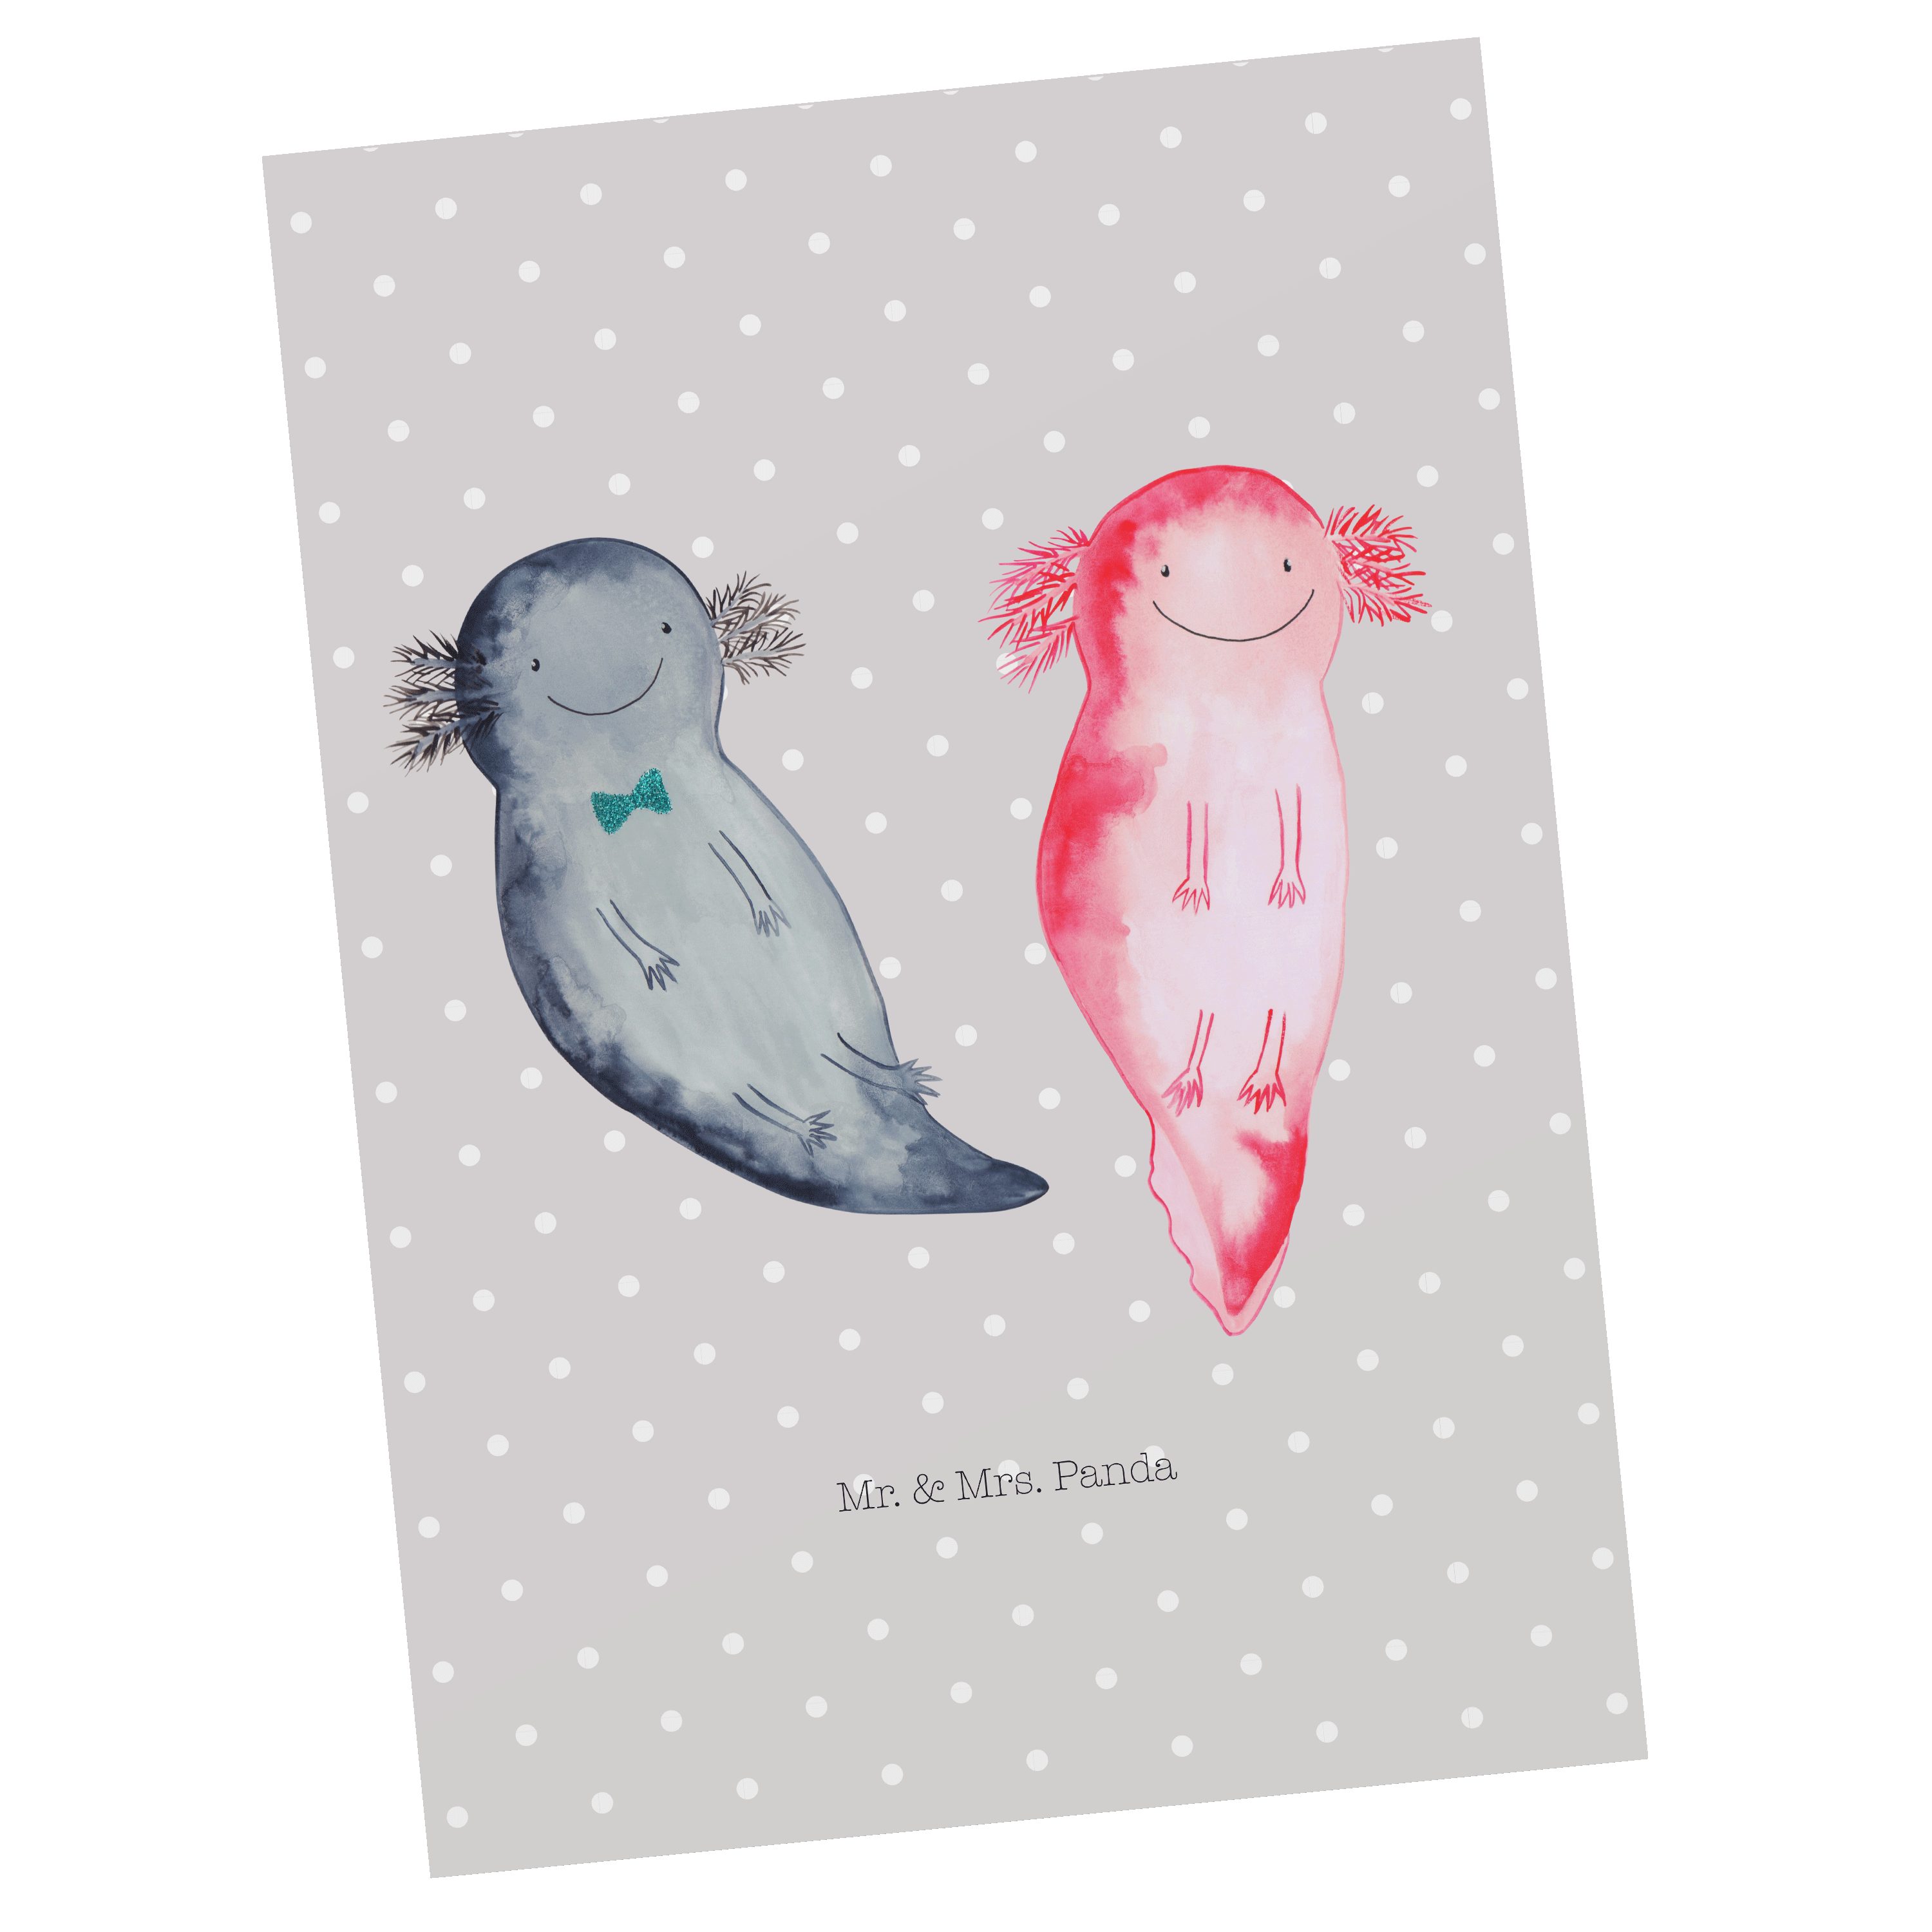 Mr. & Mrs. - Panda Axolotl - Liebe, Axel+Lotte Pastell Postkarte große Geschenk, Ver Grau Liebe